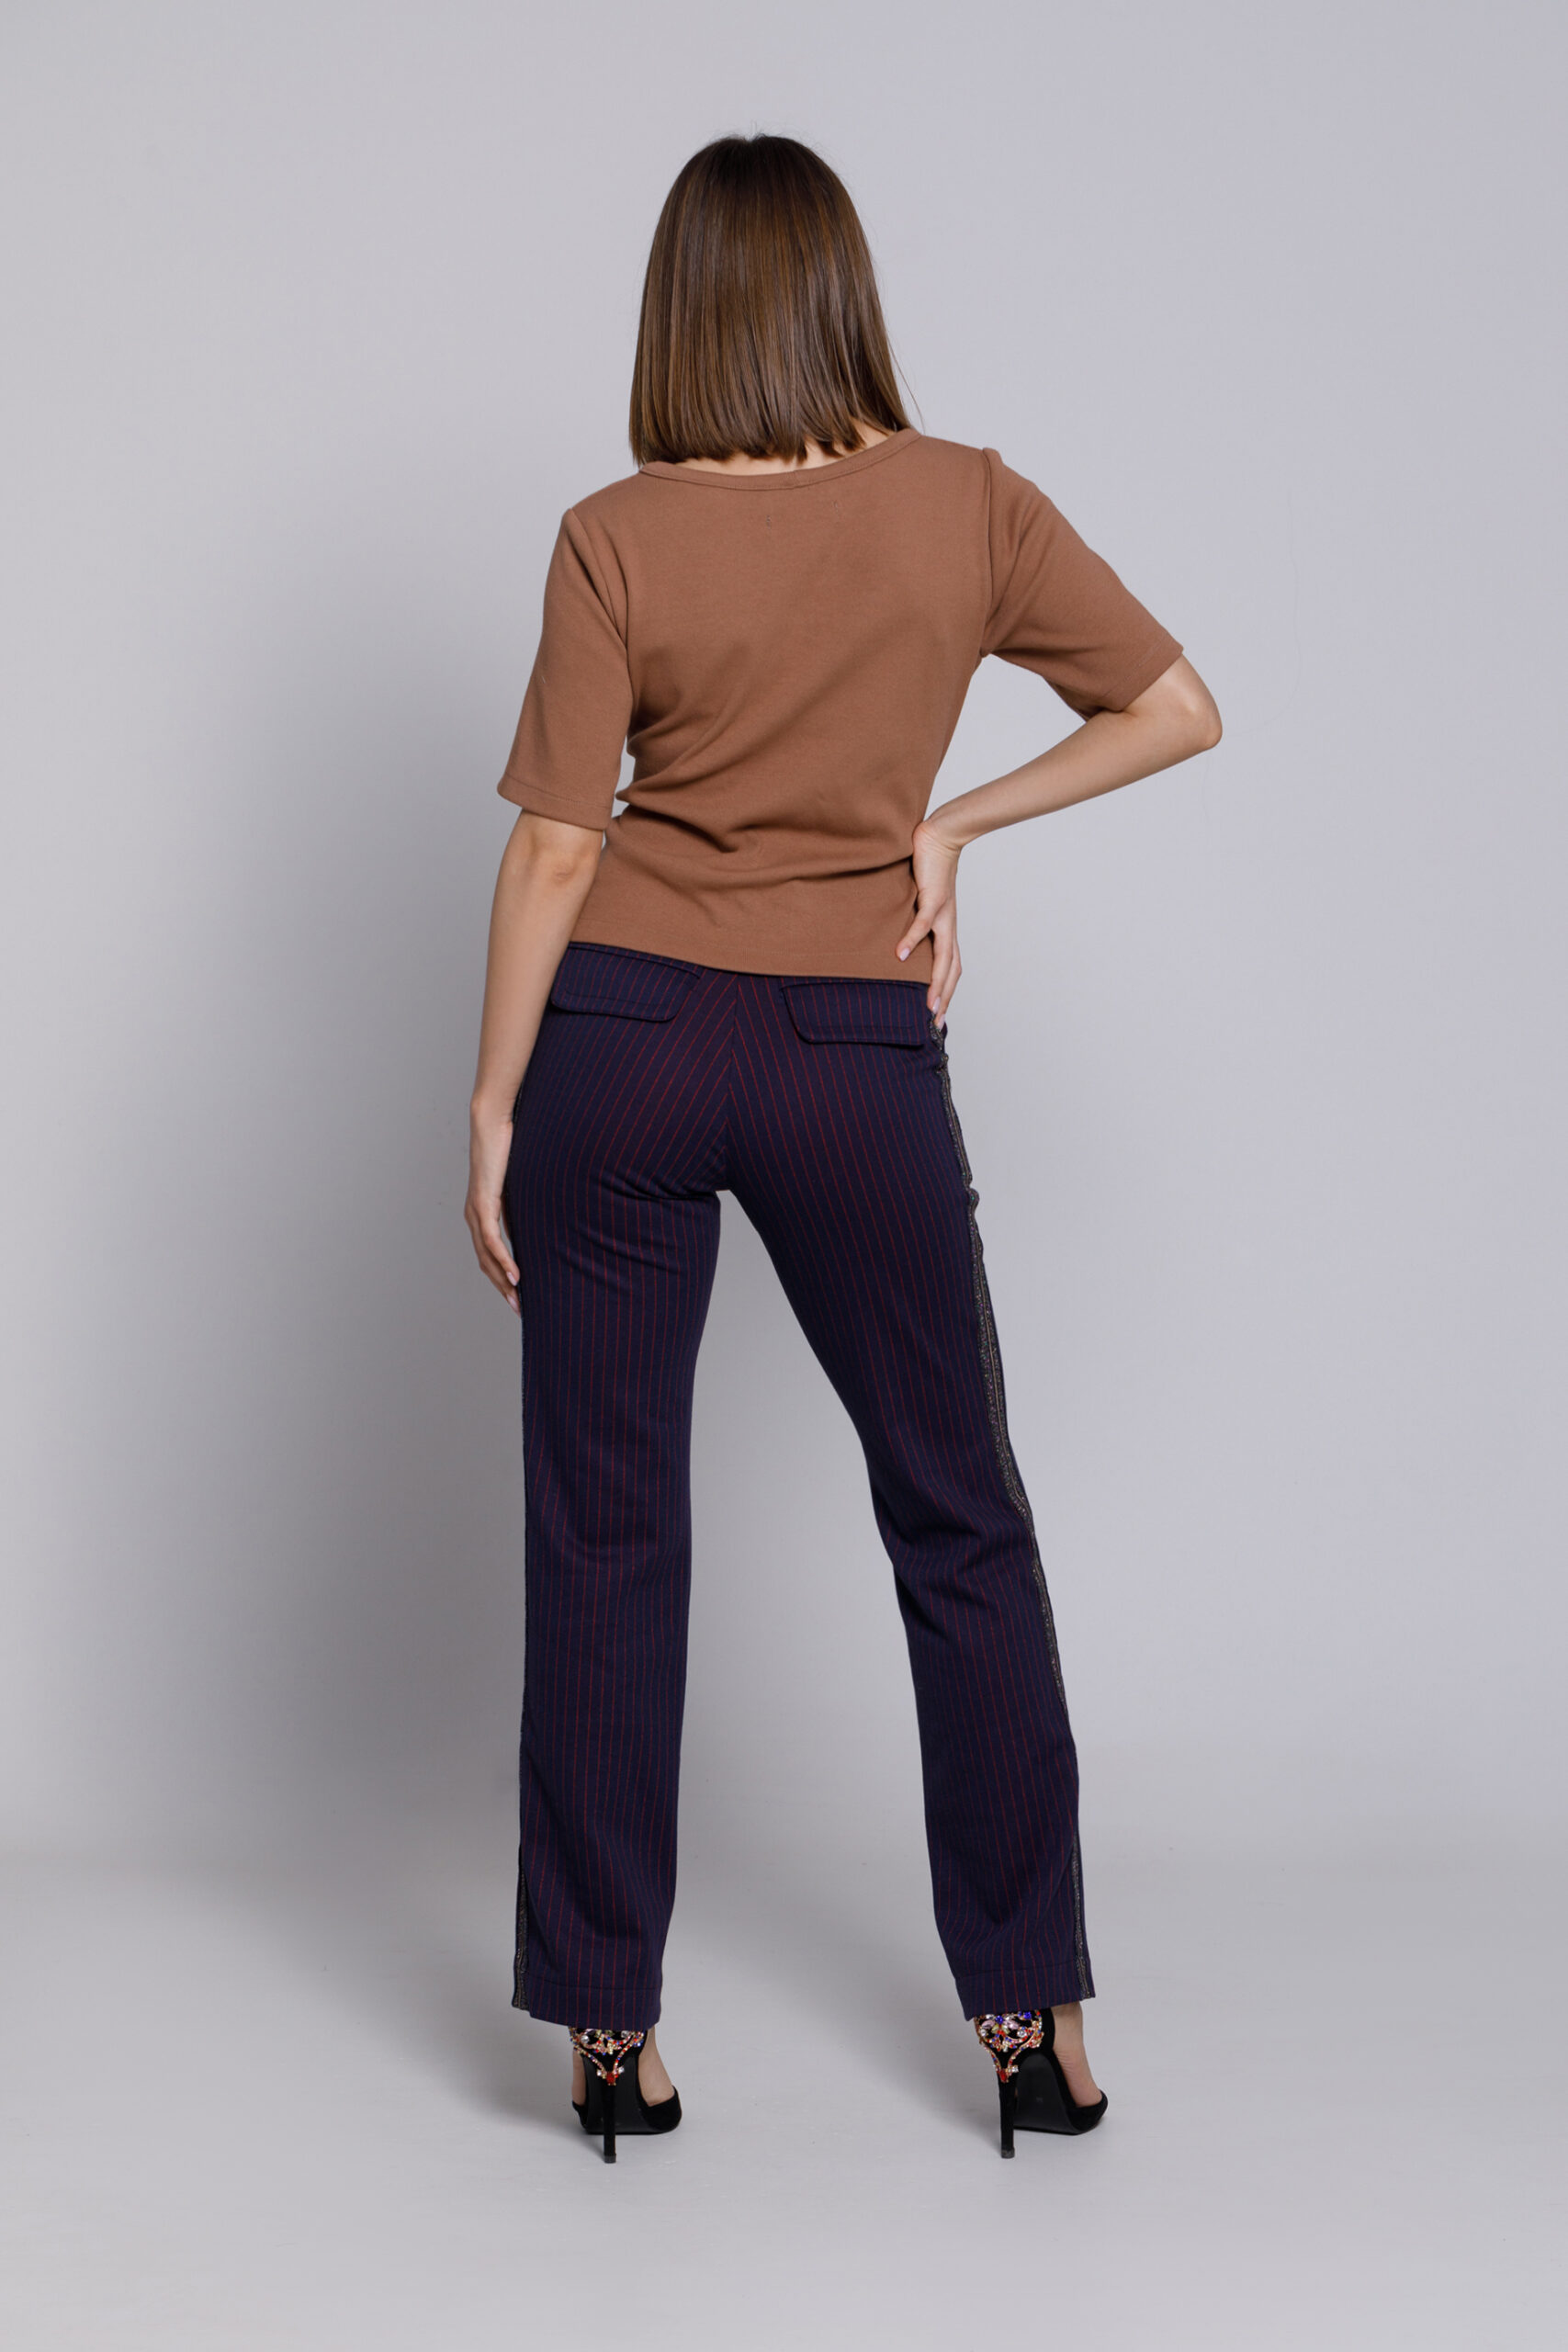 Pantalon GLADYS bleumarin cu dungi rosii. Materiale naturale, design unicat, cu broderie si aplicatii handmade